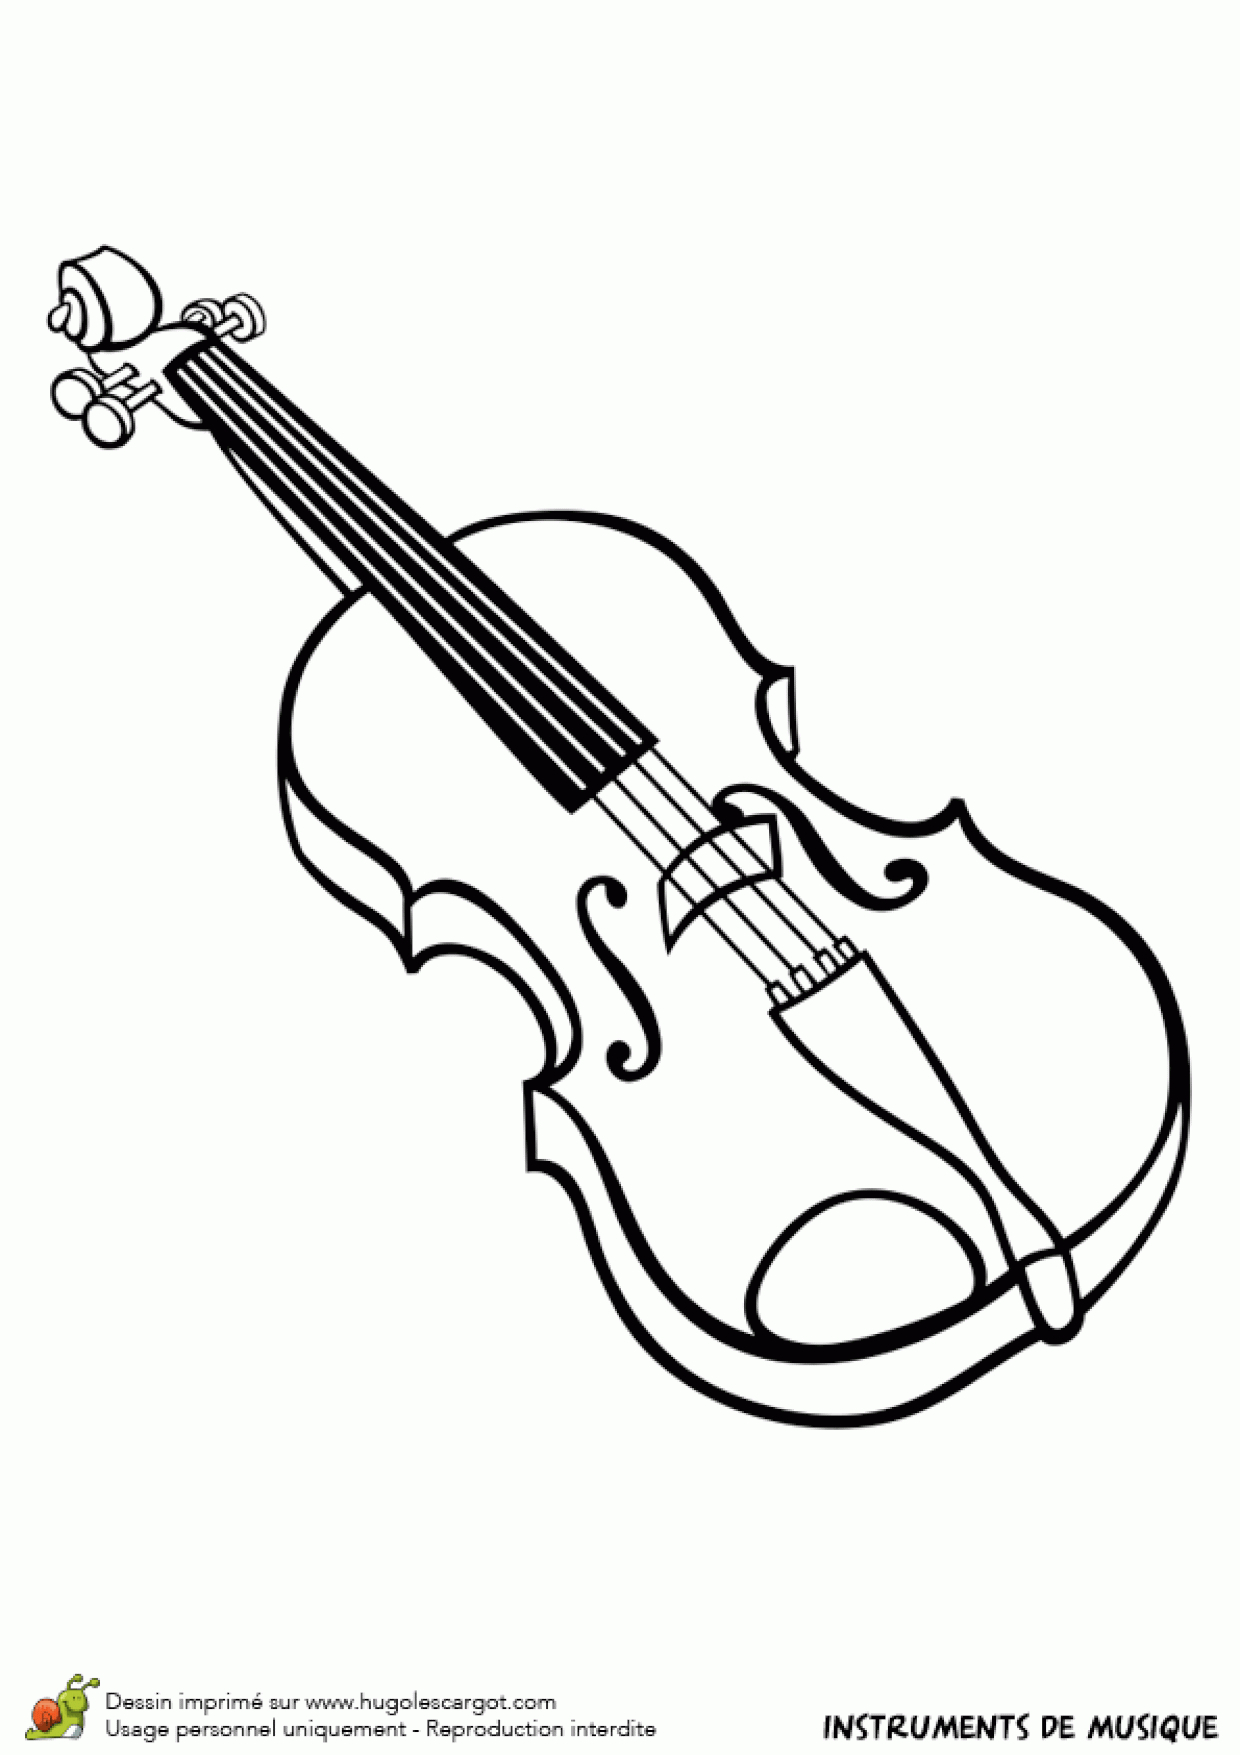 Dessin À Colorier D&amp;#039;un Instrument De Musique, Le Violon intérieur Image Instrument De Musique À Imprimer 